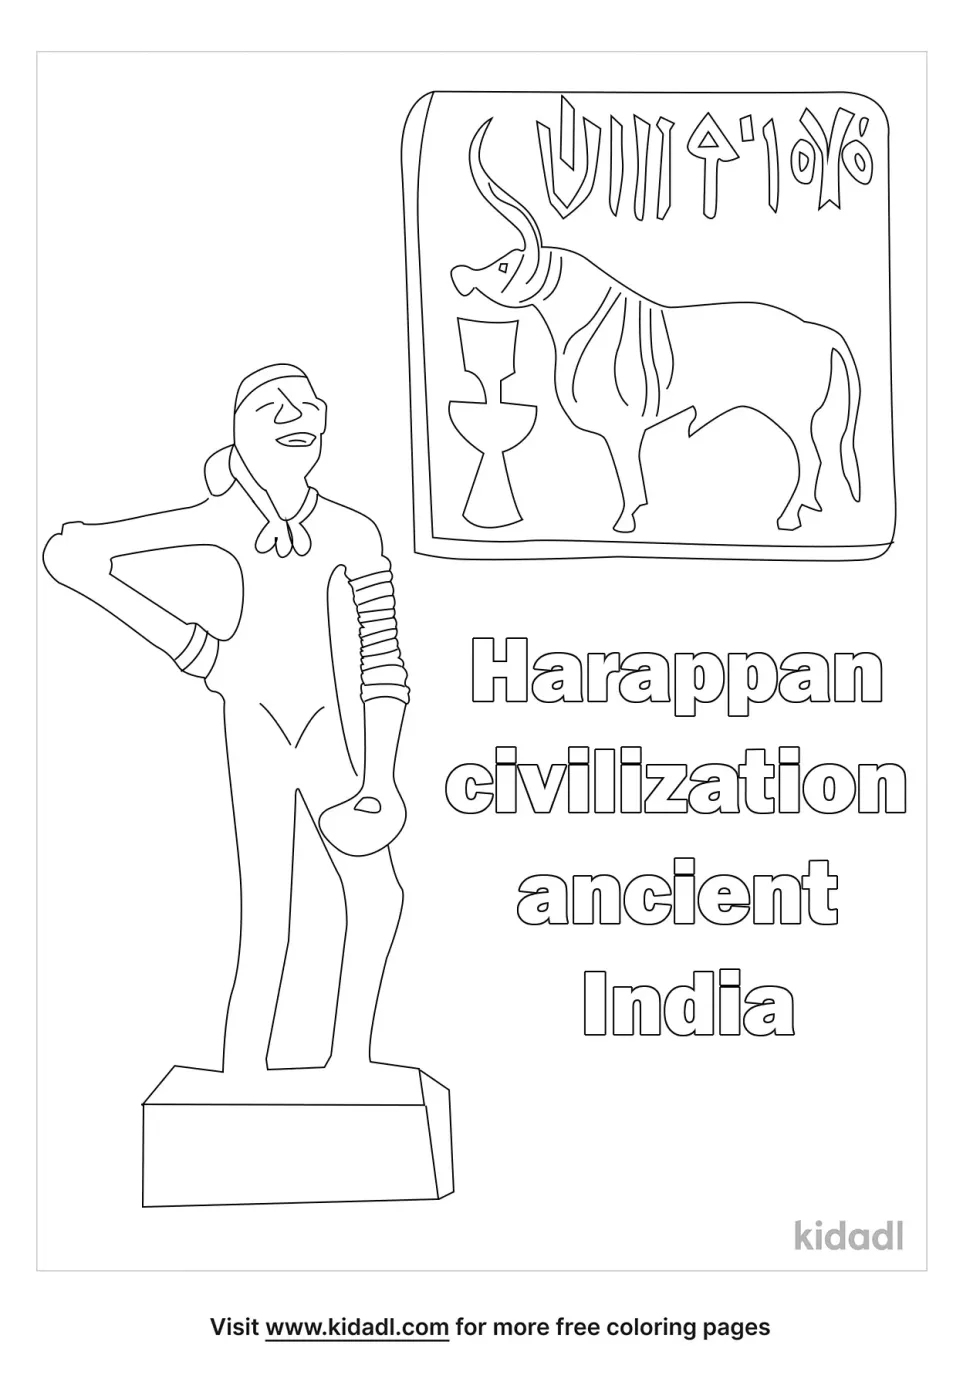 Harappan Civilization Ancient India